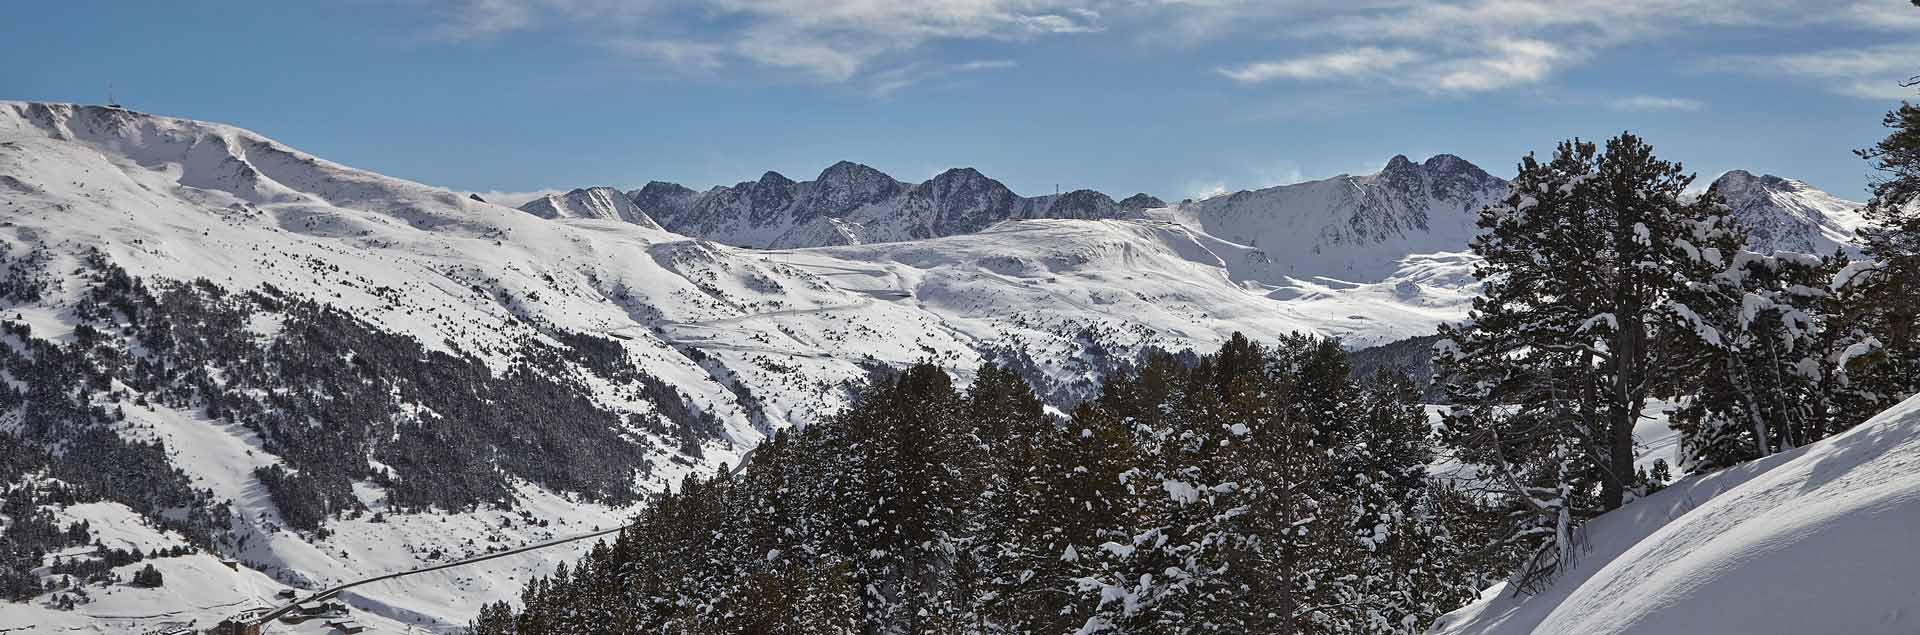 Héliski uniquement pour les meilleurs skieurs en Andorre